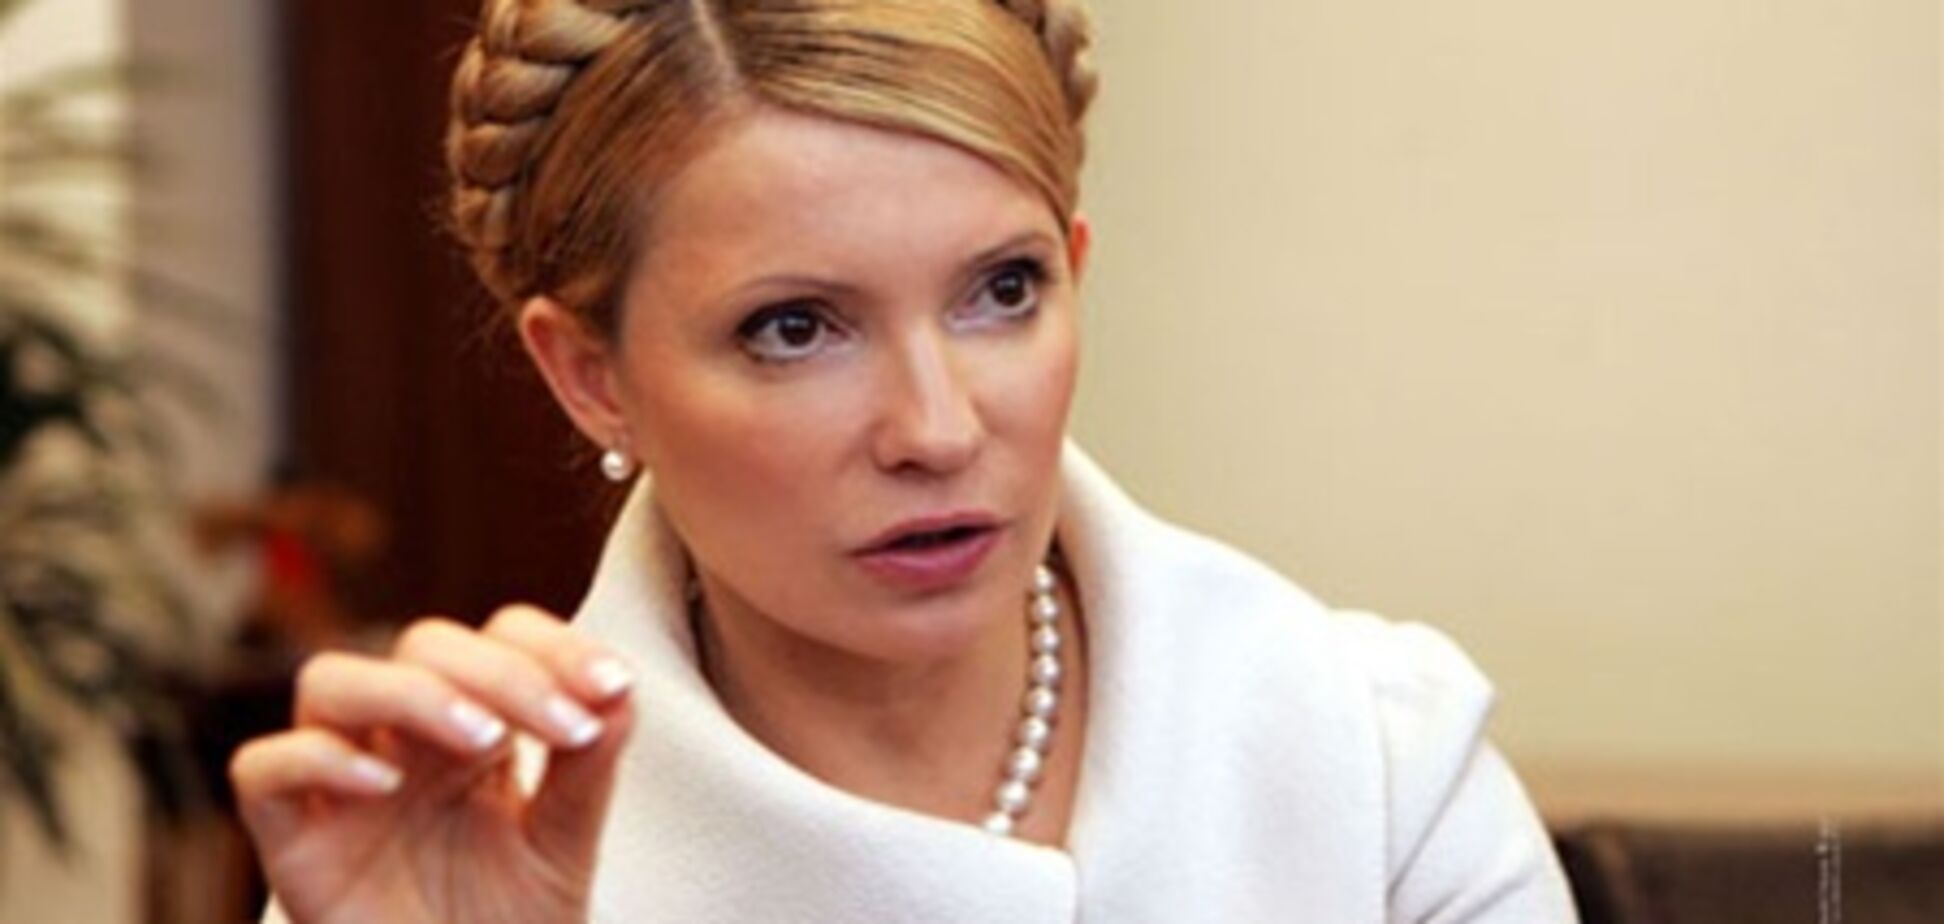 Тимошенко выглядит измученной и больной - источник в больнице